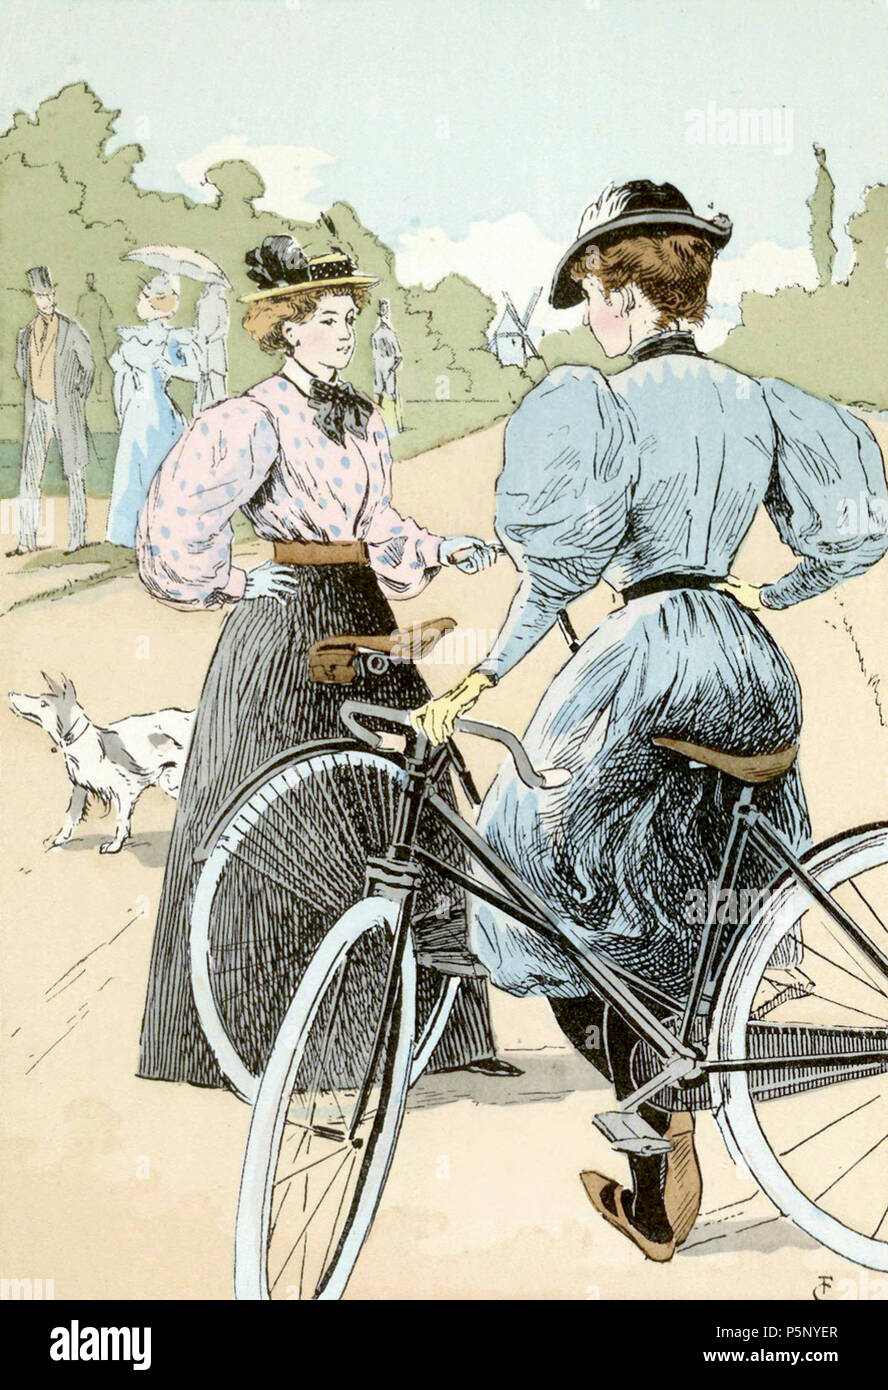 Radfahren die Damen des Rades, 1896 Serie: Paris, Hauptstadt des 19. Jahrhunderts. Die Frau mit dem Fahrrad trägt ein kurzes Kleid über dunkle Leggings. Ihr Kleid behält den Stil des Epoque, mit einem stark akzentuiert, Korsett Taille, ein sehr hoher Kragen und Wabernden, hammelkeule Ärmeln. Die Frau auf der linken Seite trägt ein englischer Maßanzug. Ihren Rock über die Hüften schmal und erweitert durch den Saum. Ihre Bluse hat ziemlich weiten Ärmeln und einem sehr hohen Kragen. Die beiden Frauen Hüte auf den Köpfen thront, höchstwahrscheinlich von Compinions statt. Zusammenfassung Quellen: Boucher, Fran Stockfoto